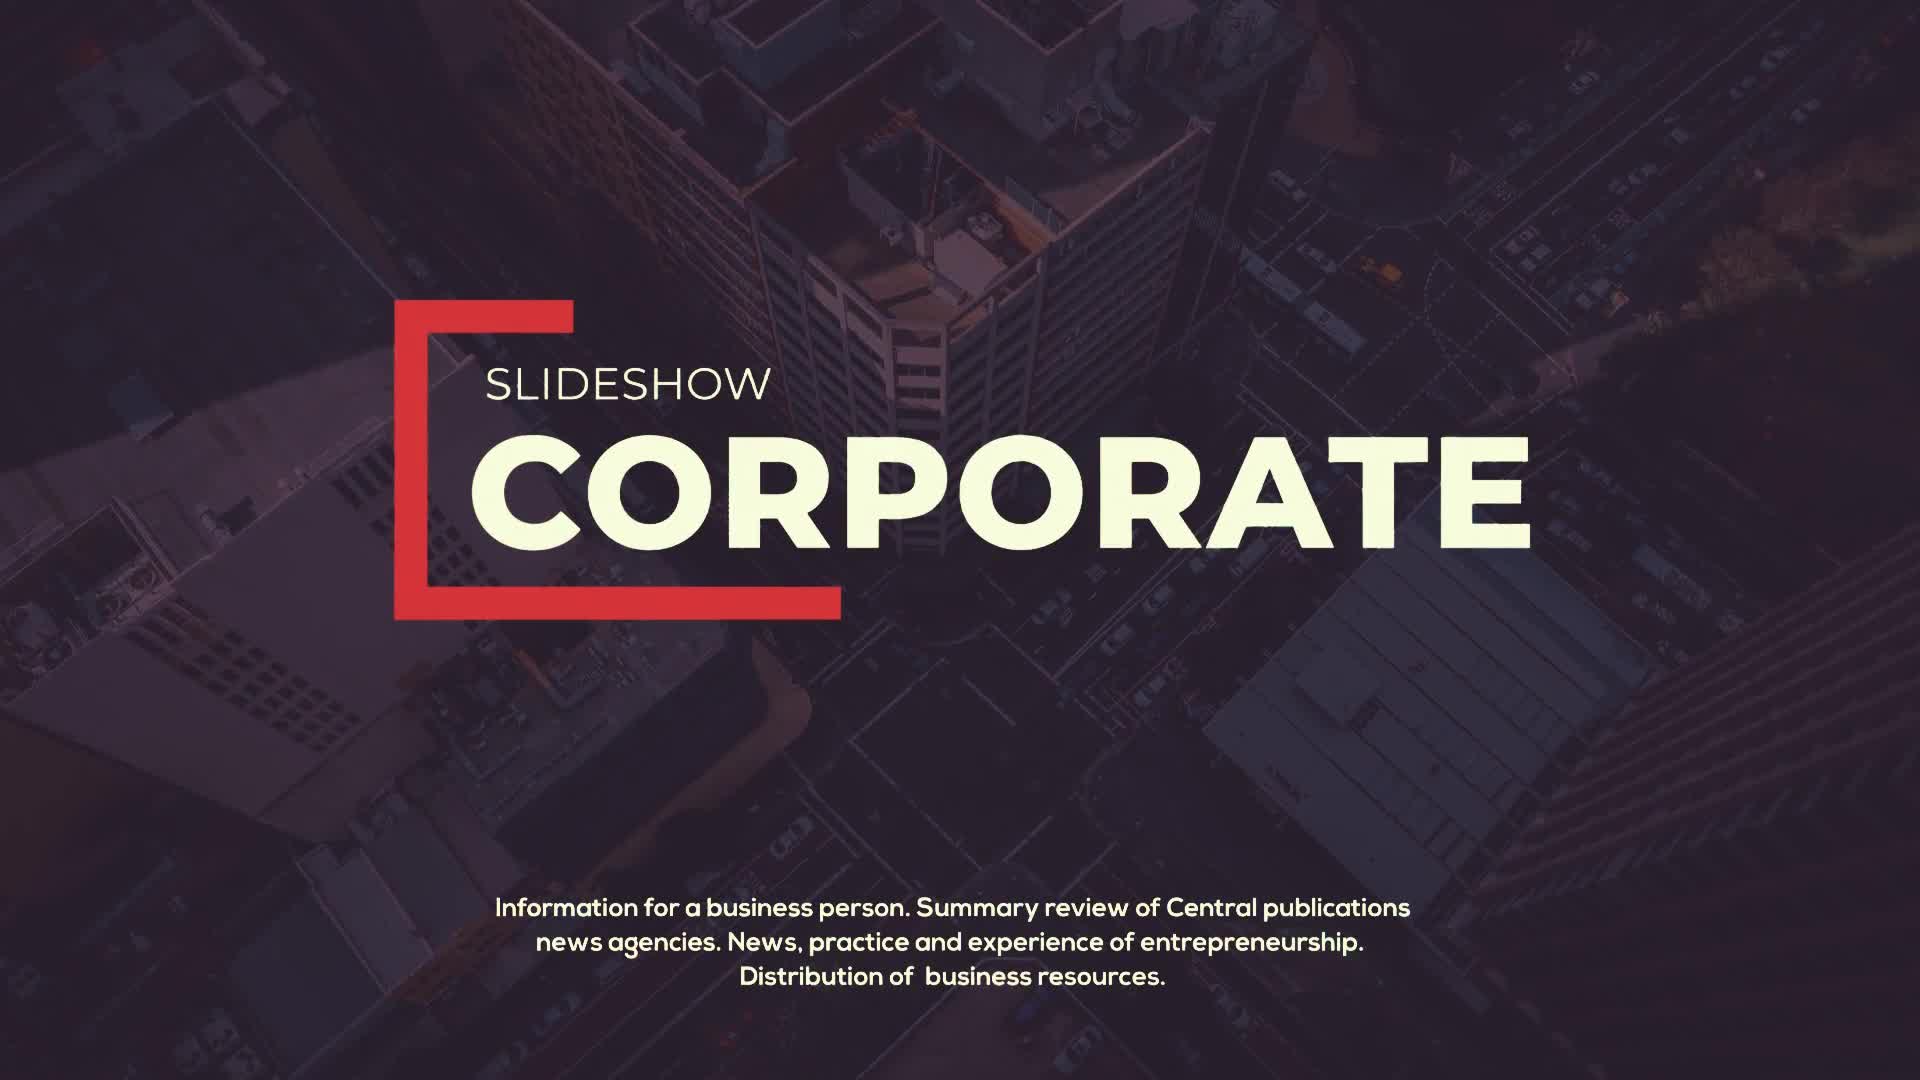 Corporate Slideshow Videohive 29410356 Premiere Pro Image 1